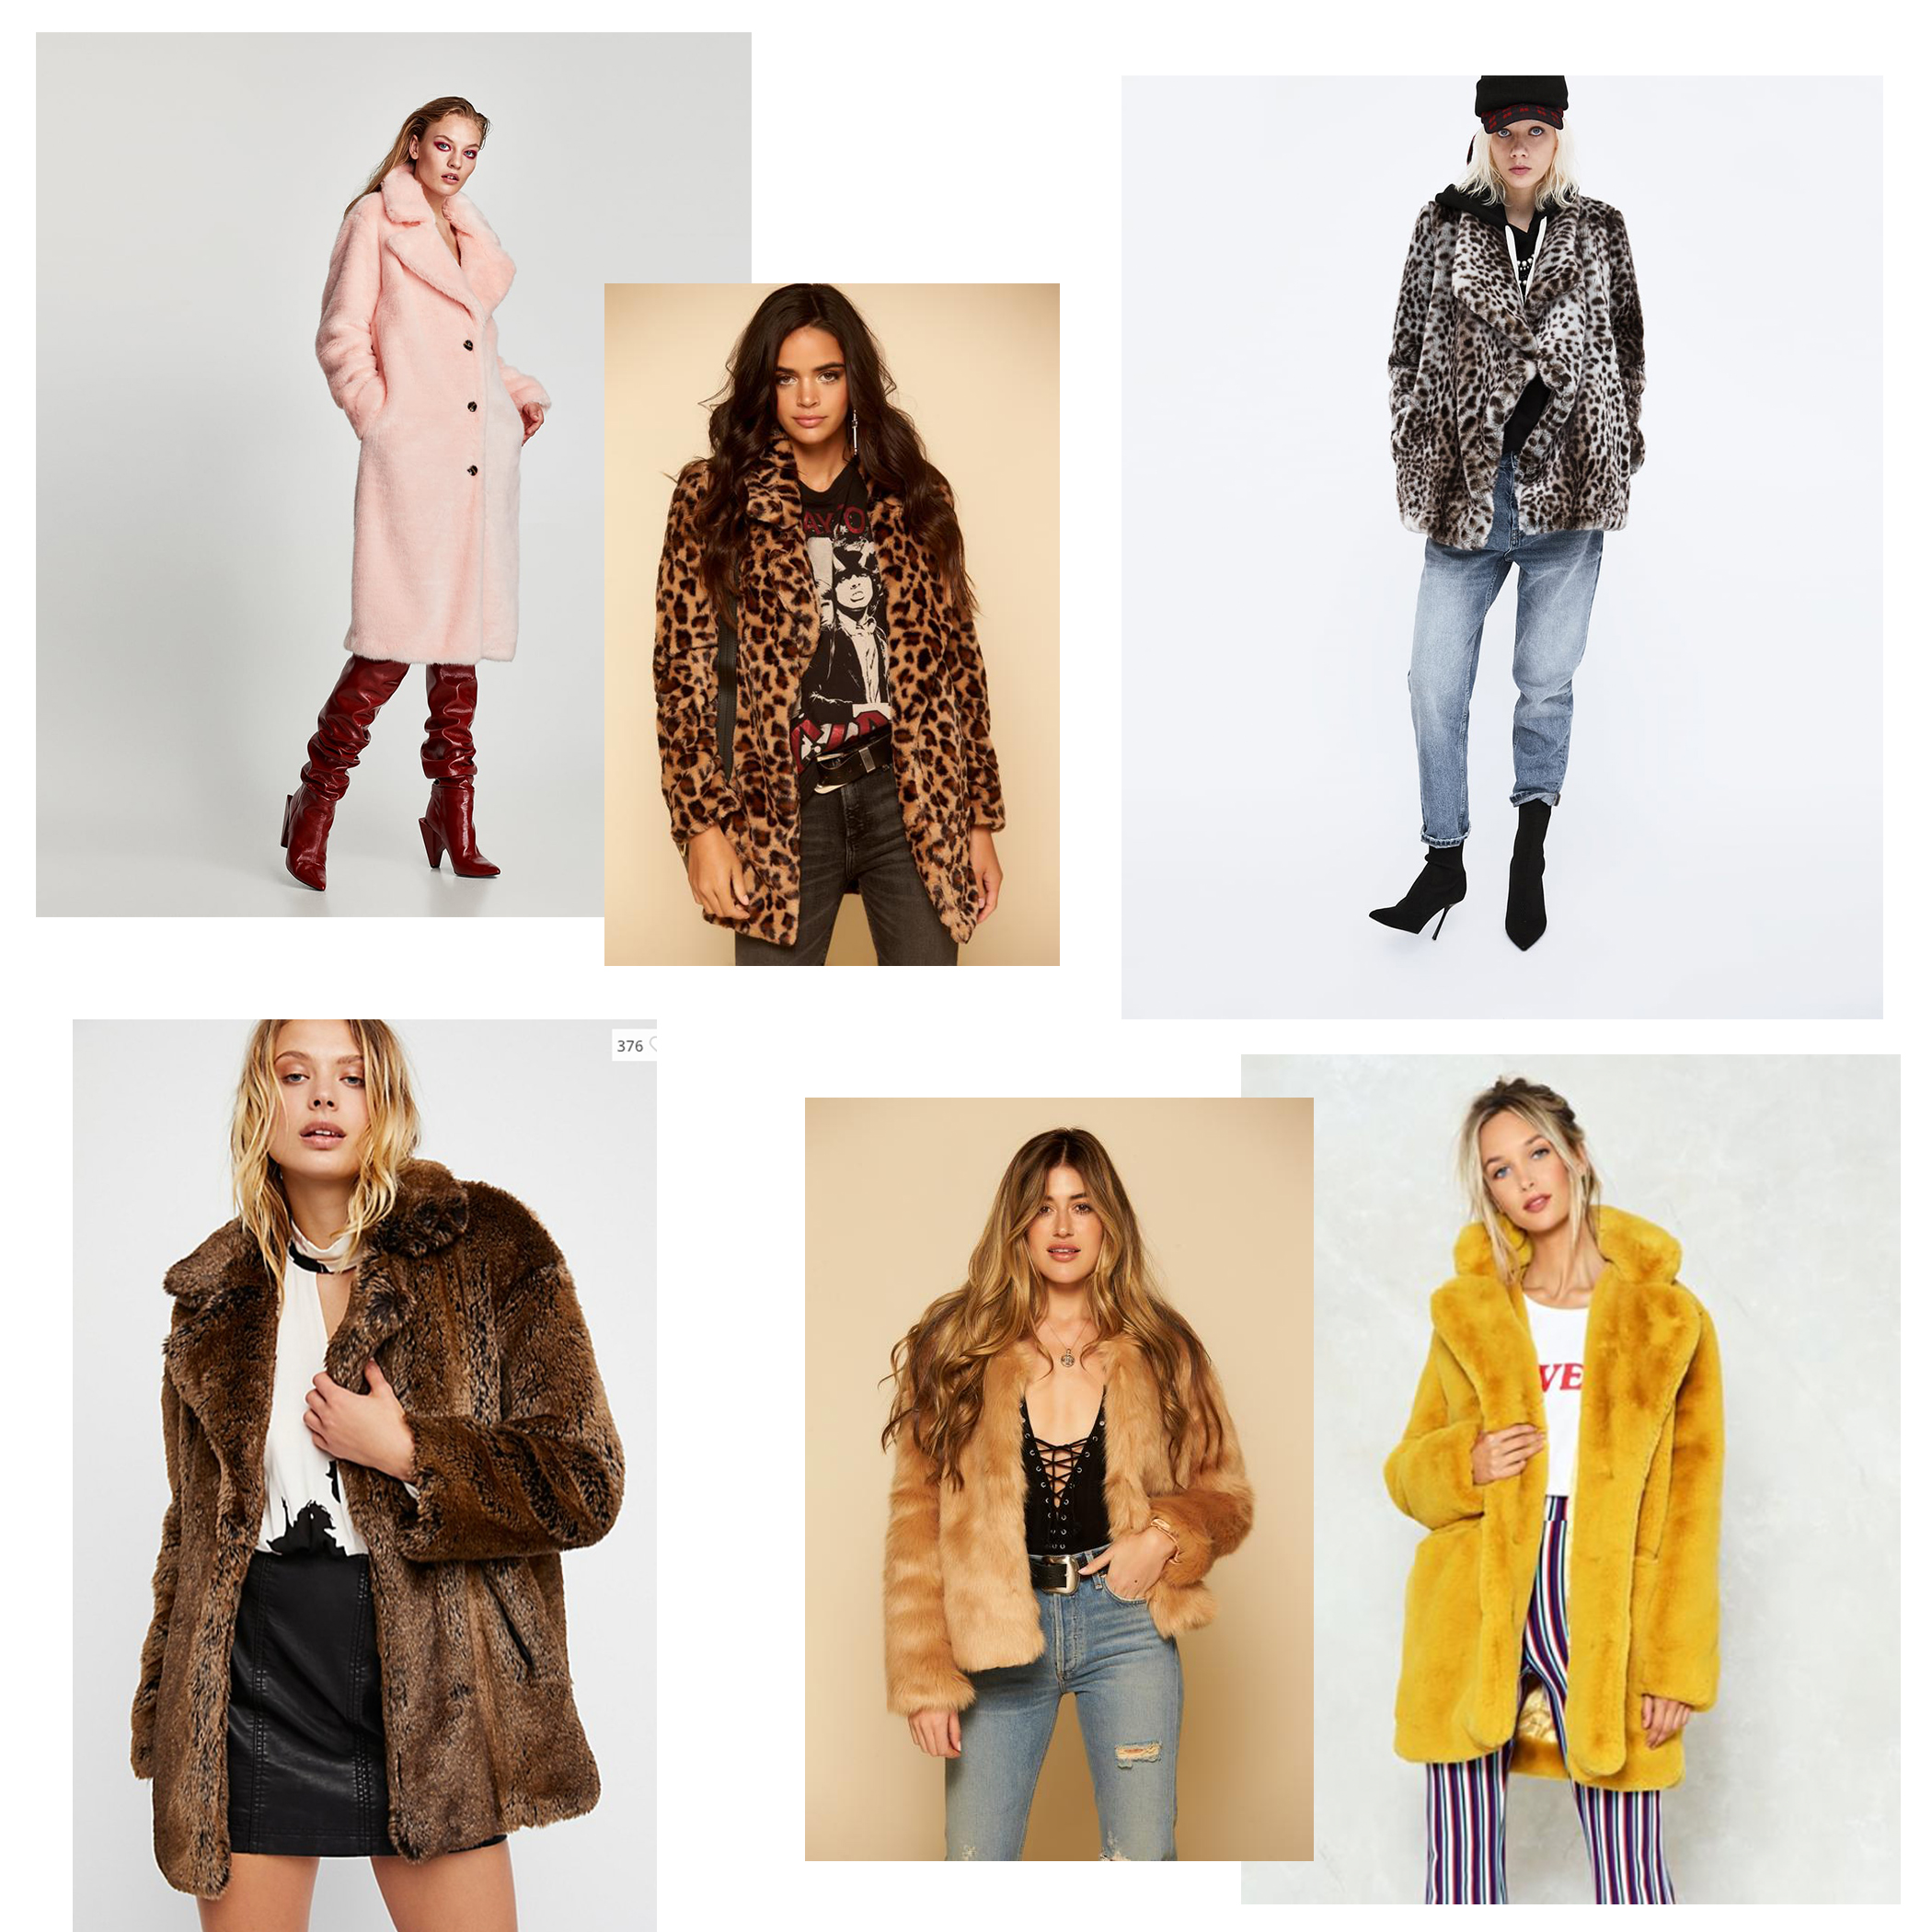 zara faux fur jackets